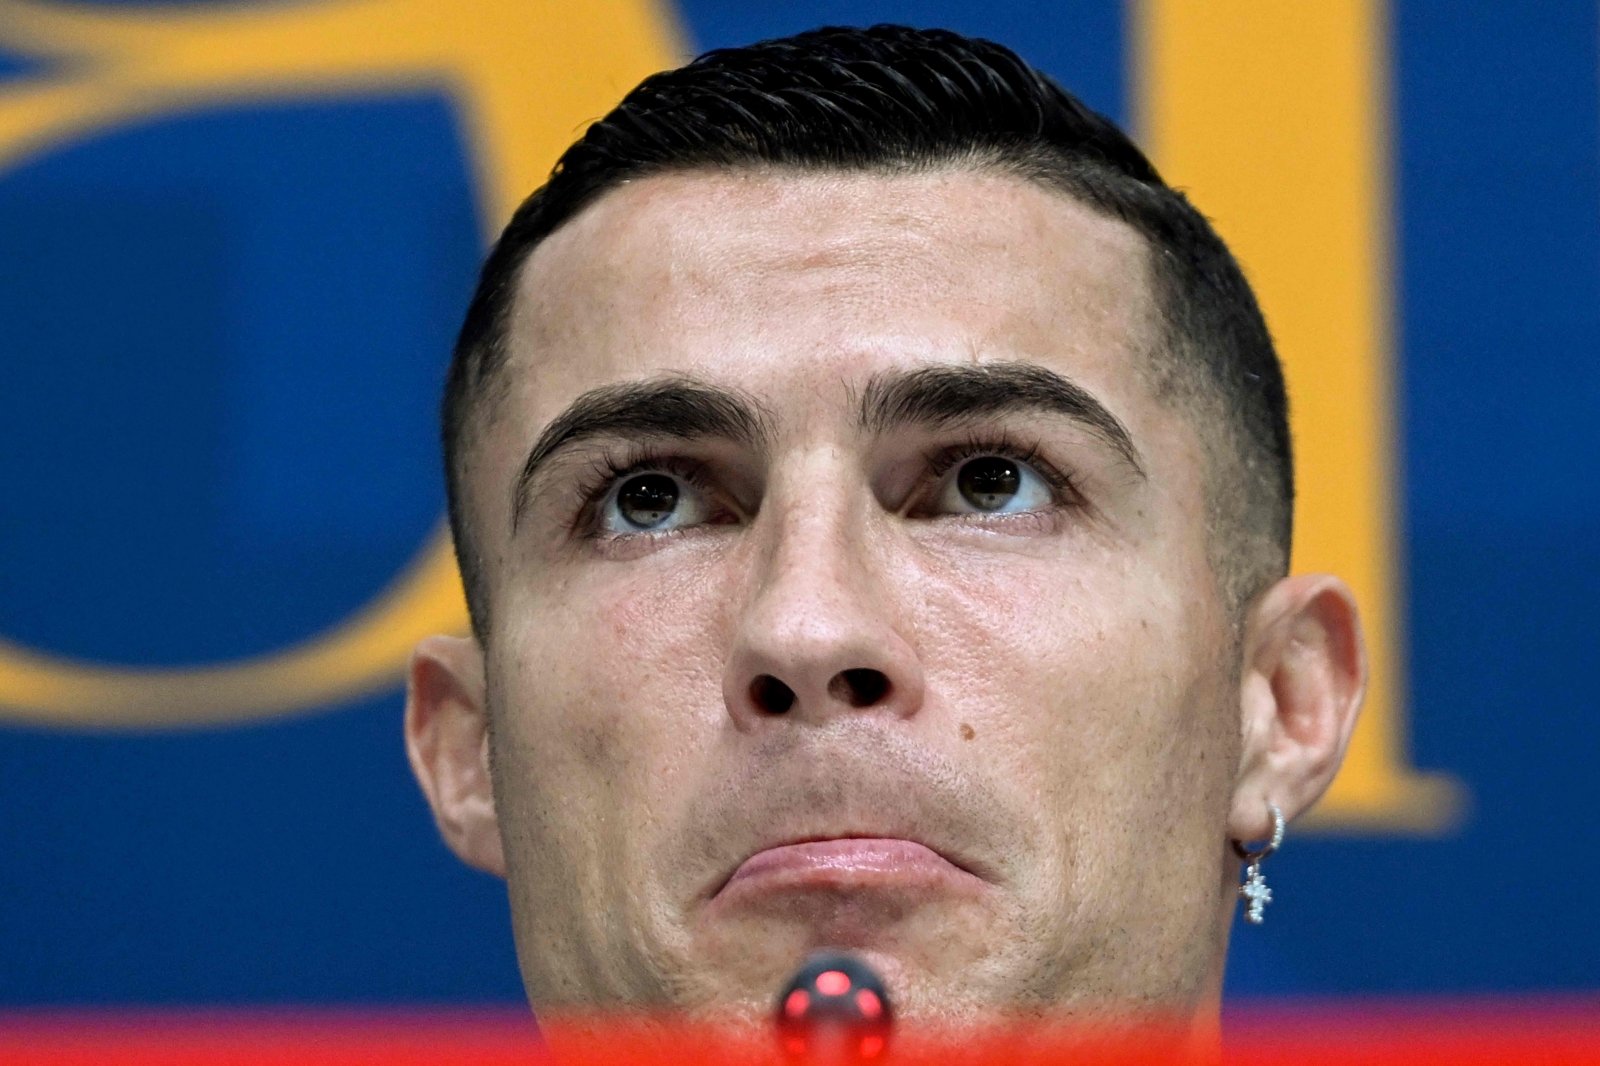 Oficjalnie: Kariera Cristiano Ronaldo w Manchesterze dobiegła końca